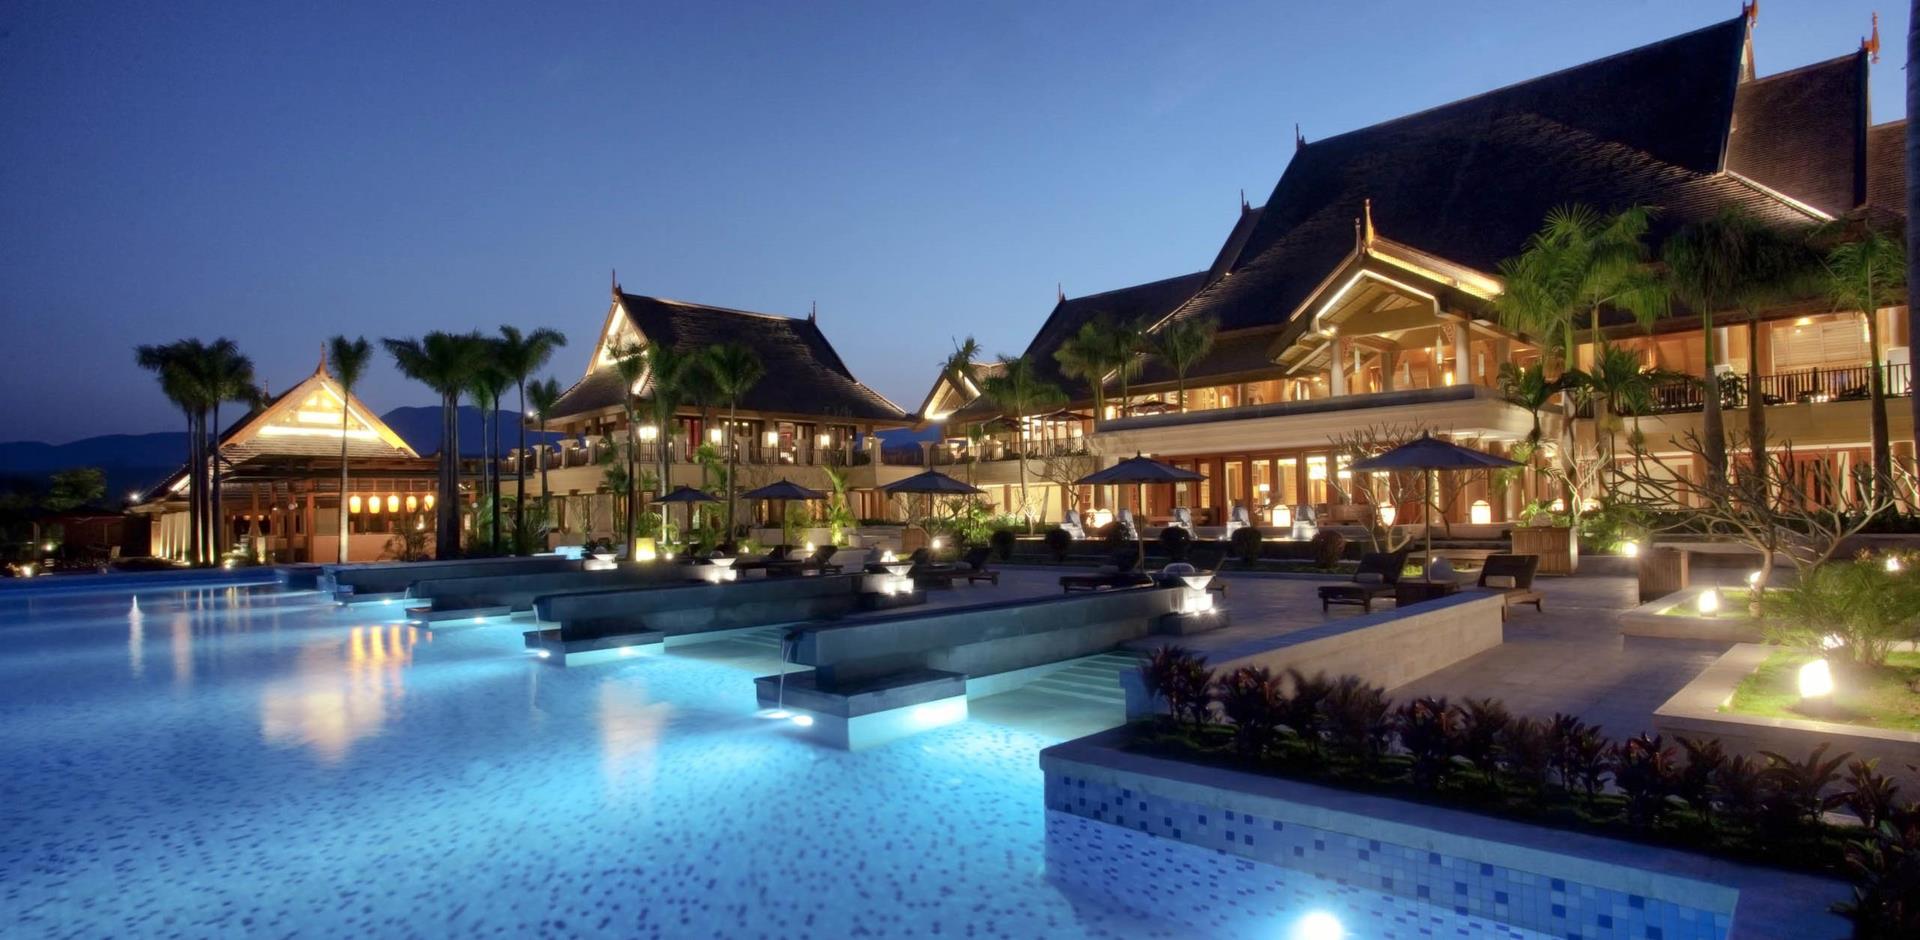 Pool and exterior, Anantara Xishuangbanna Resort and Spa, Jinghong, China